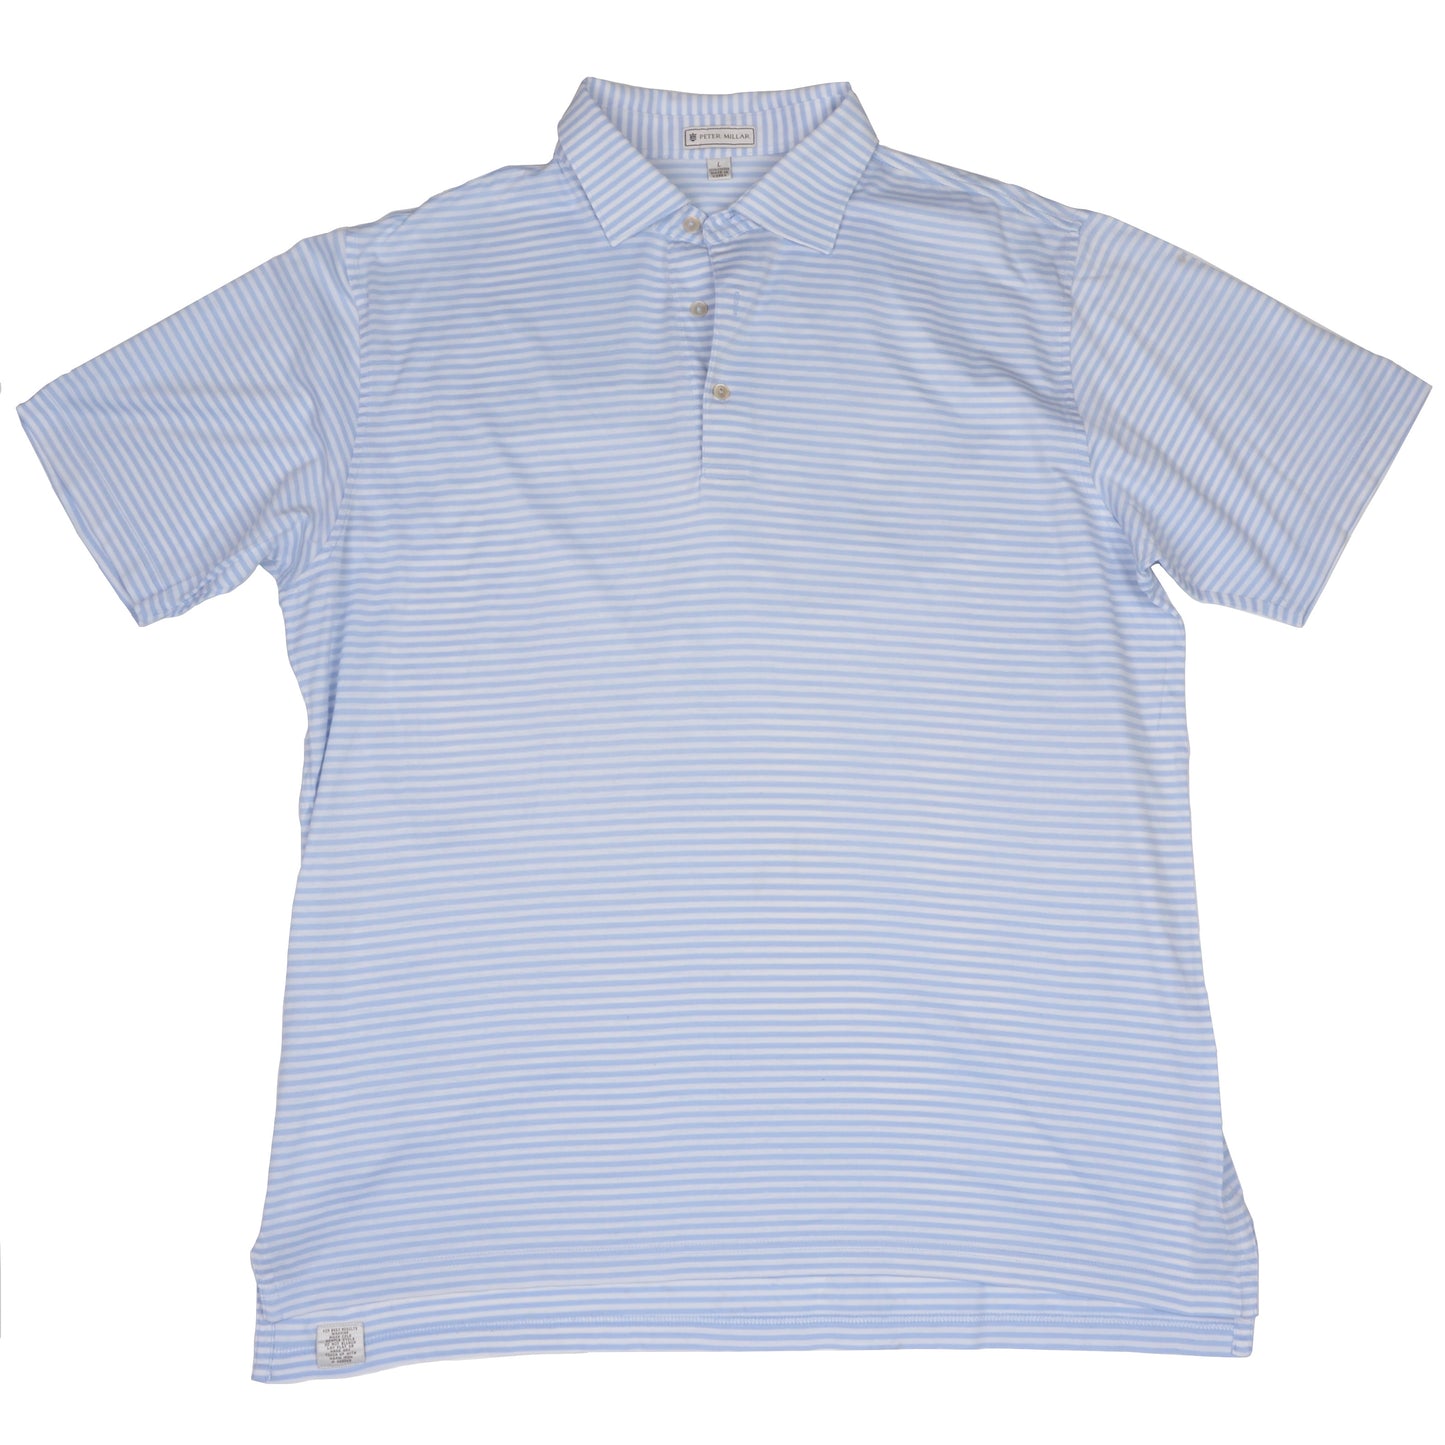 Peter Millar Poloshirt Größe L - Blaue Streifen